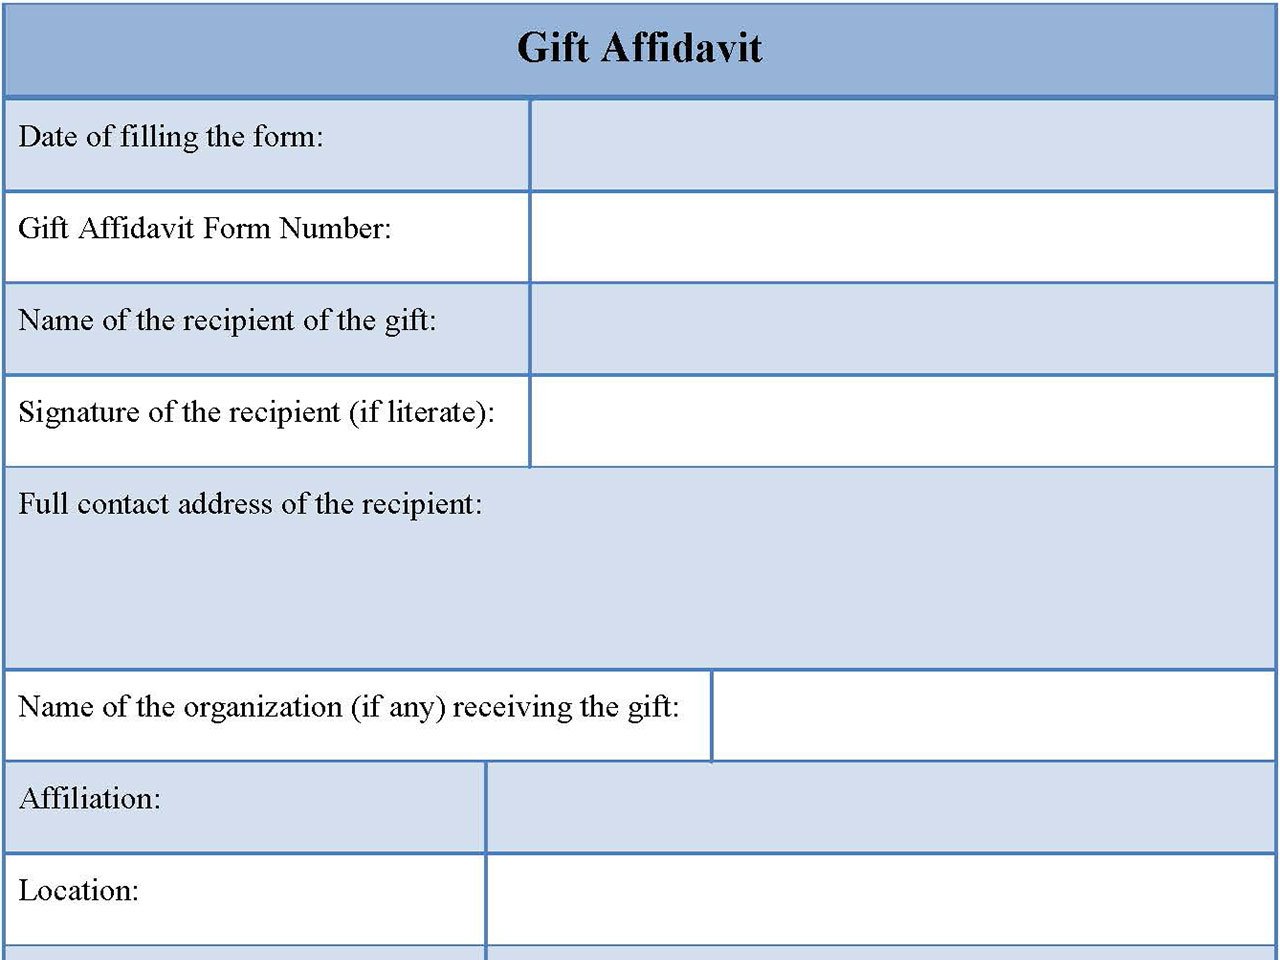 Gift Affidavit Form